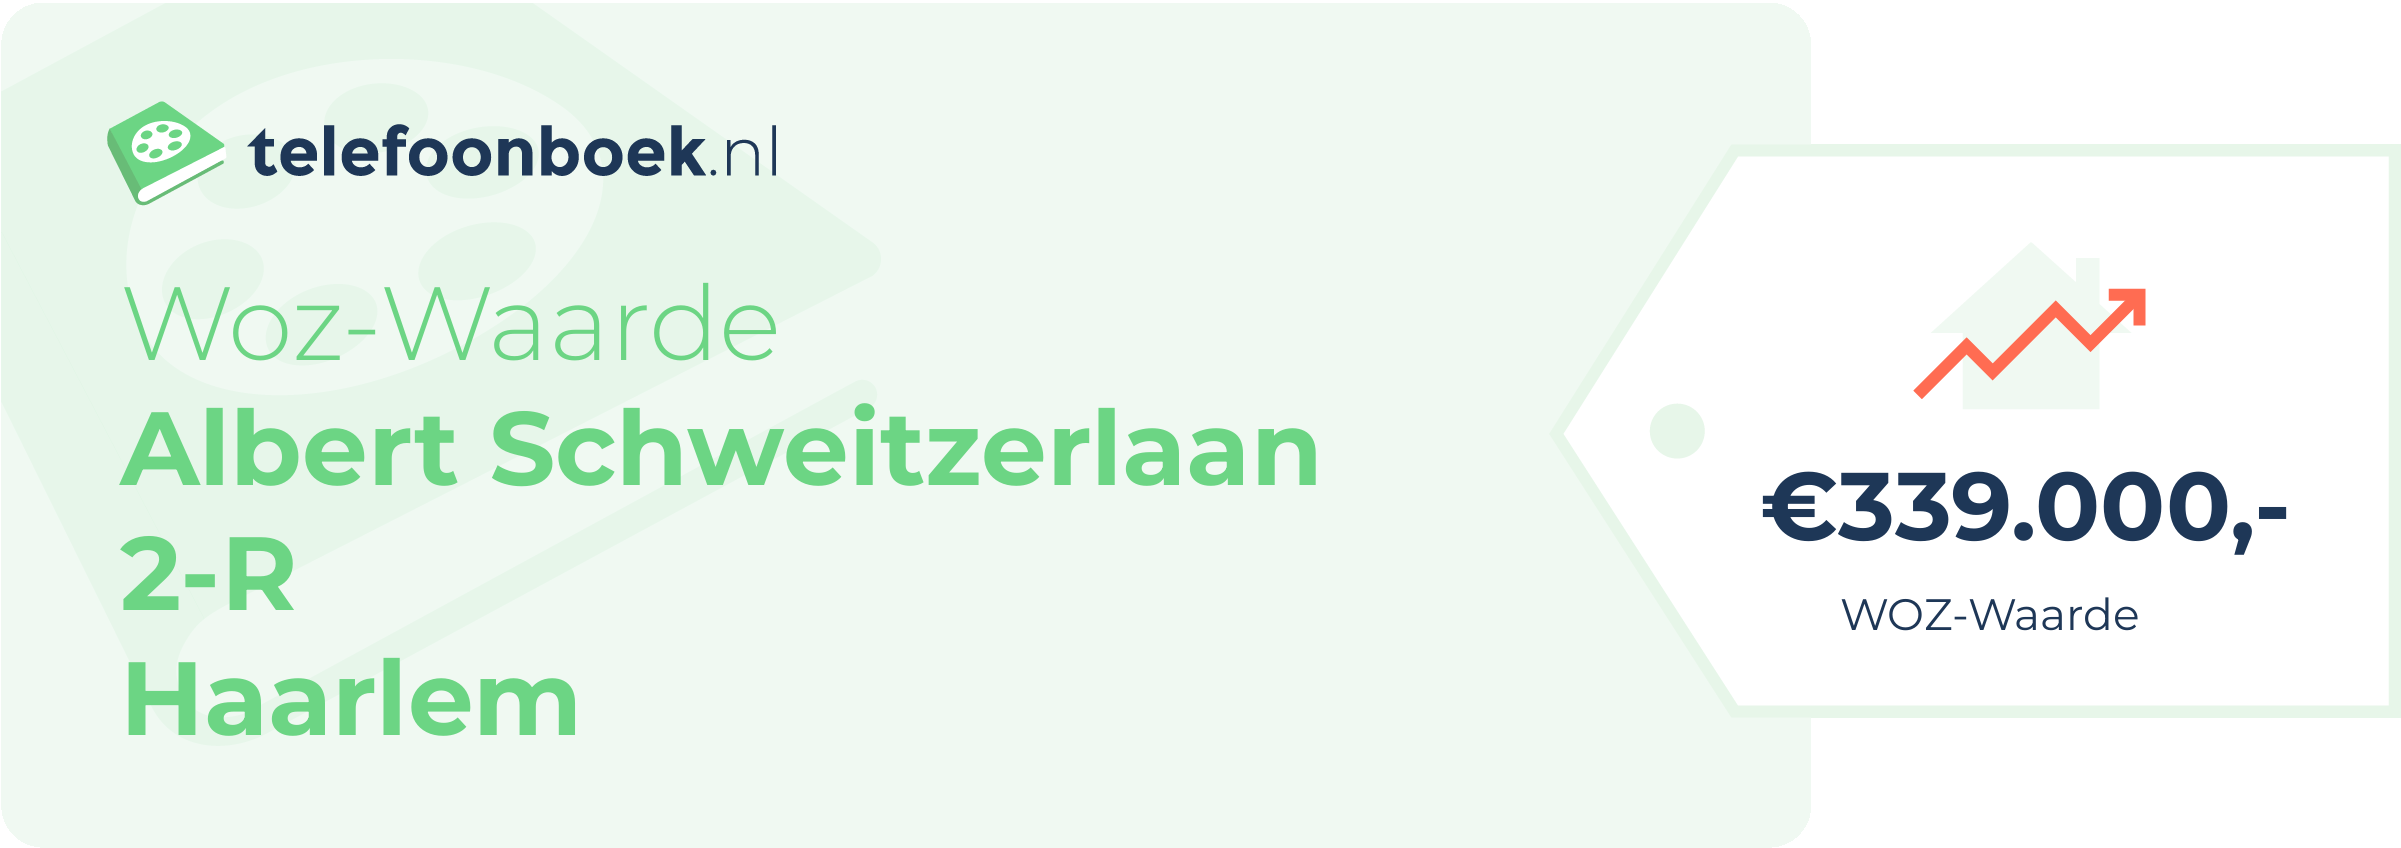 WOZ-waarde Albert Schweitzerlaan 2-R Haarlem